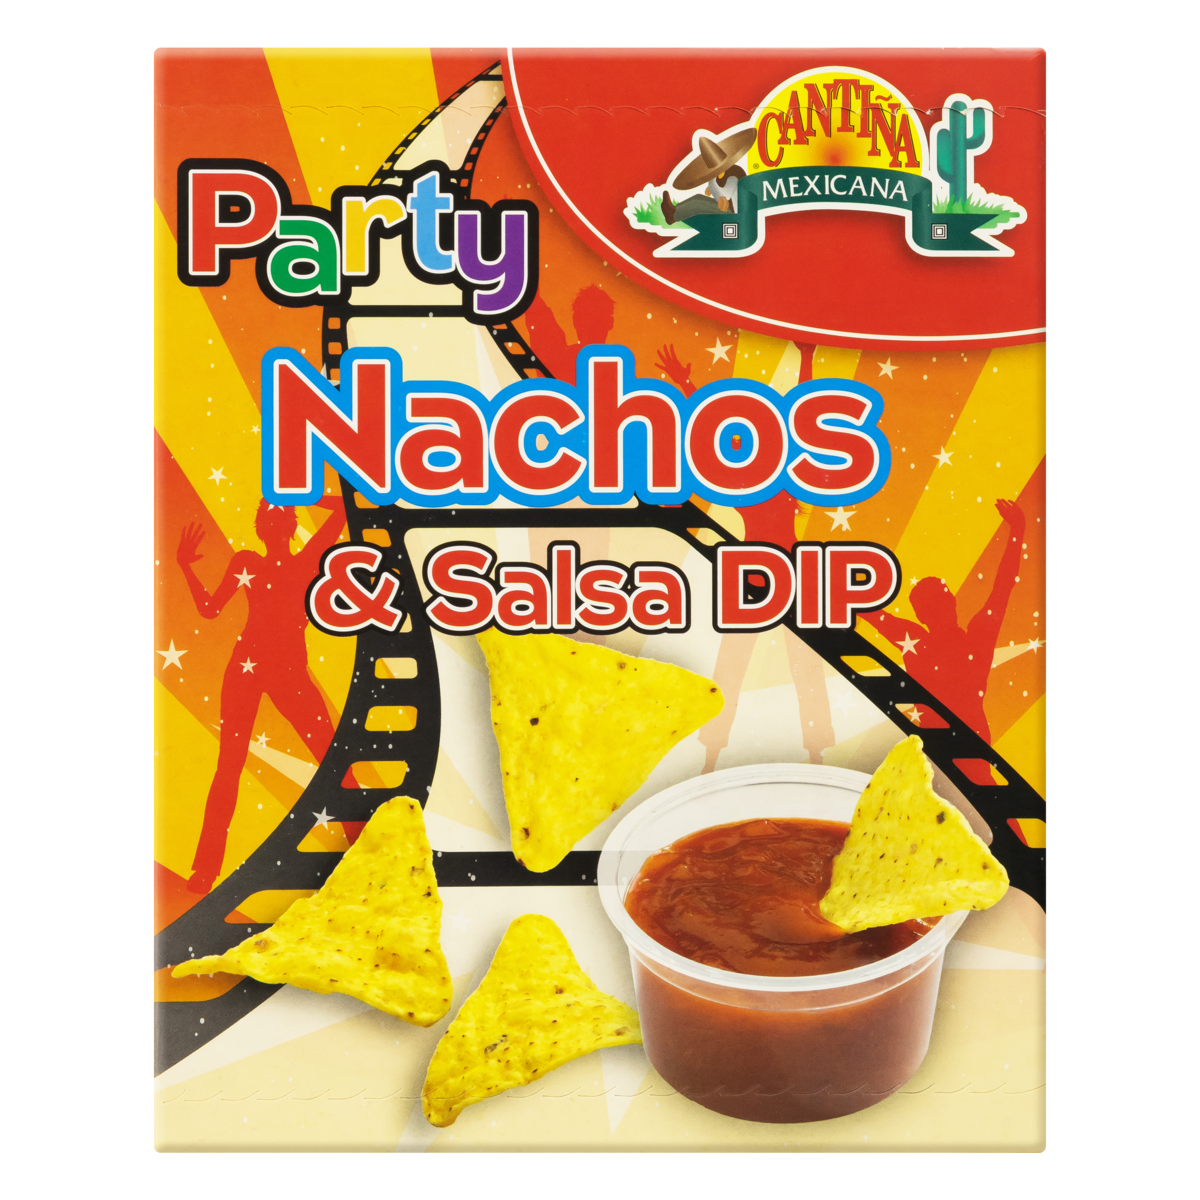 0011359645095 - CHIPS NACHO COM MOLHO DE SALSA CANTIÑA MEXICANA PARTY CAIXA 150G